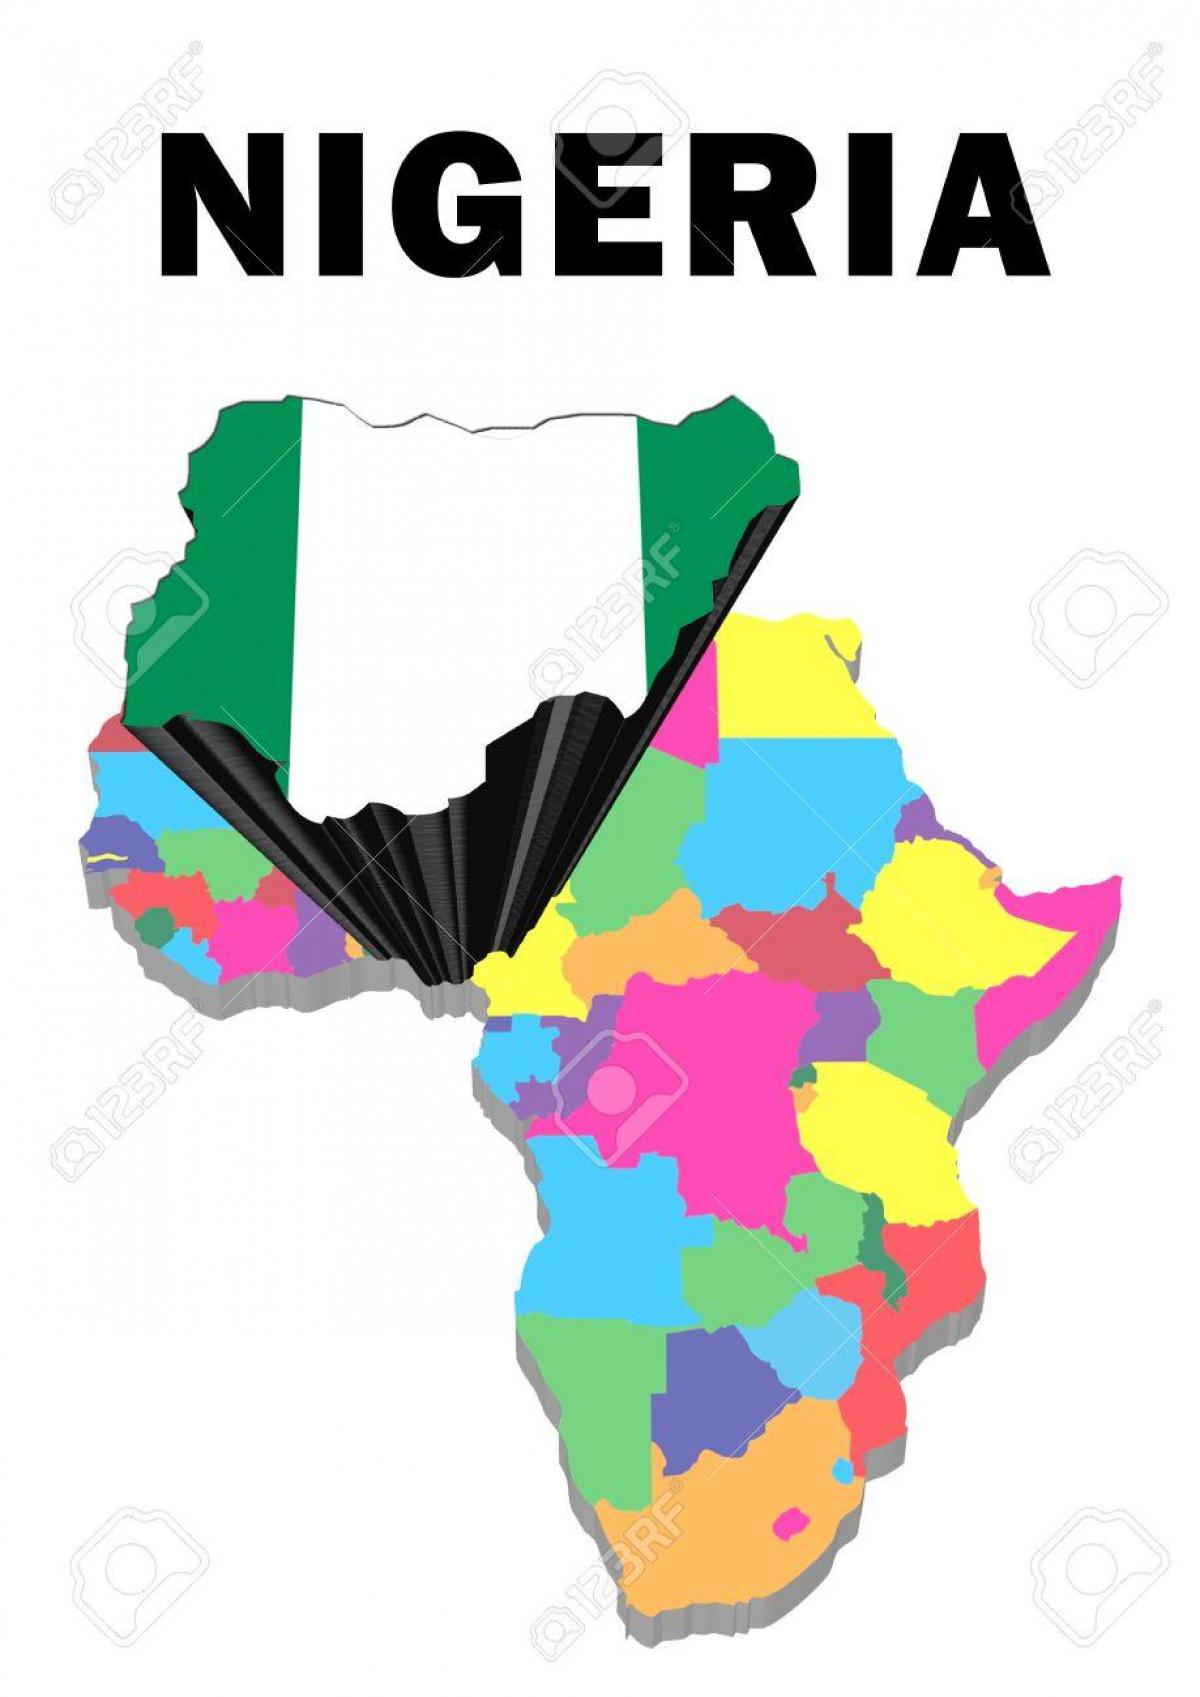 kort over afrika med nigeria fremhævet